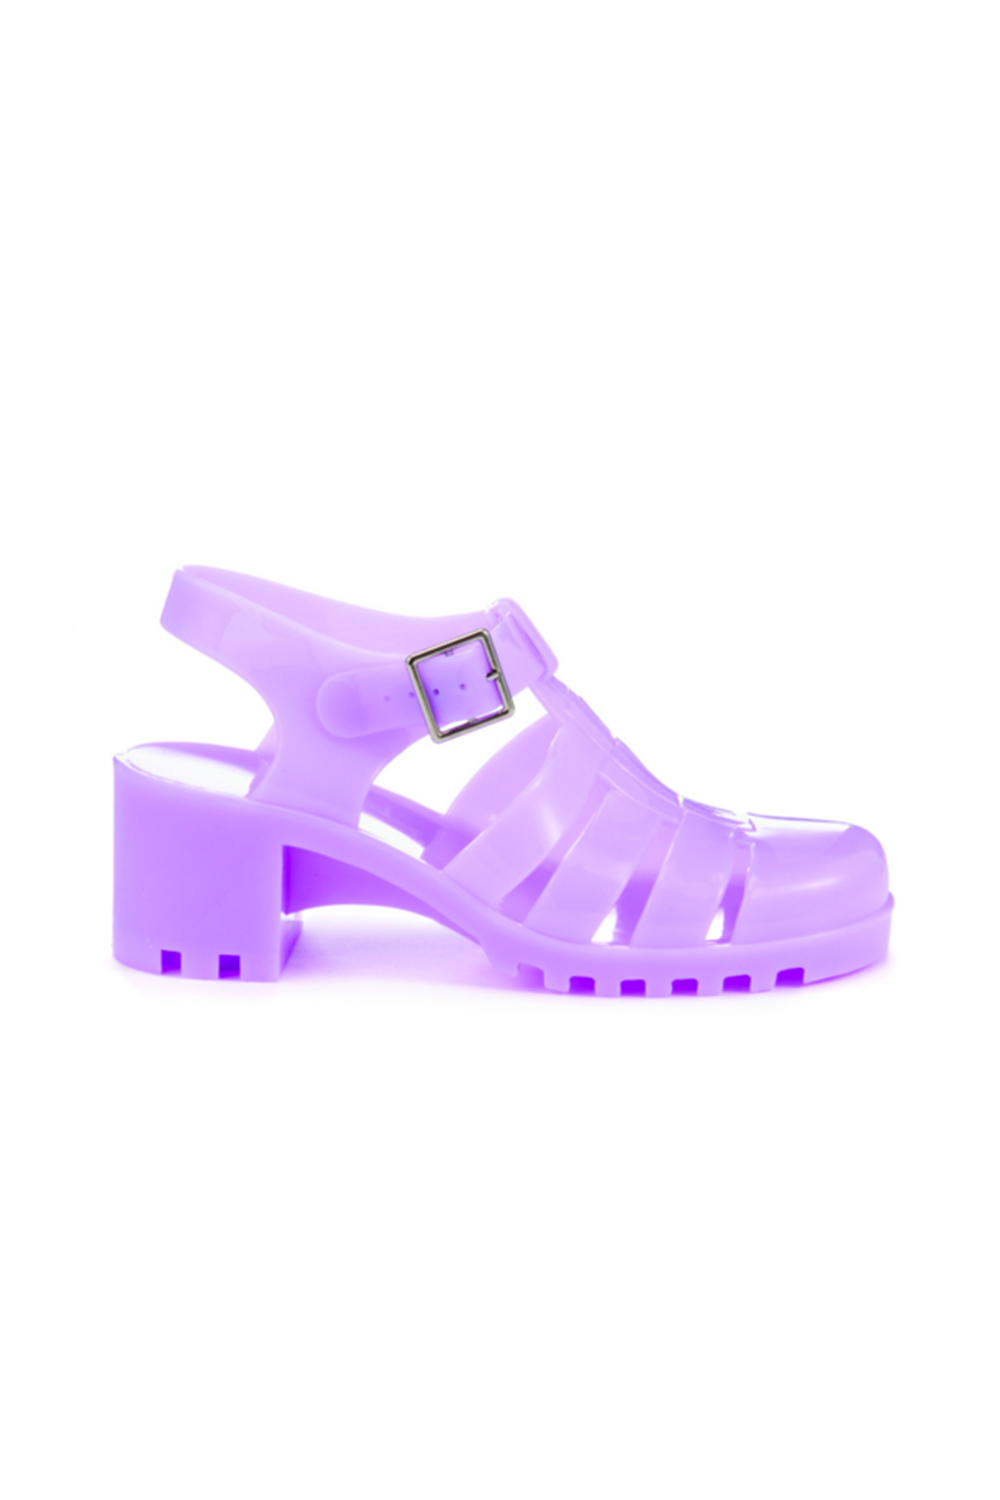 lilac purple shoes